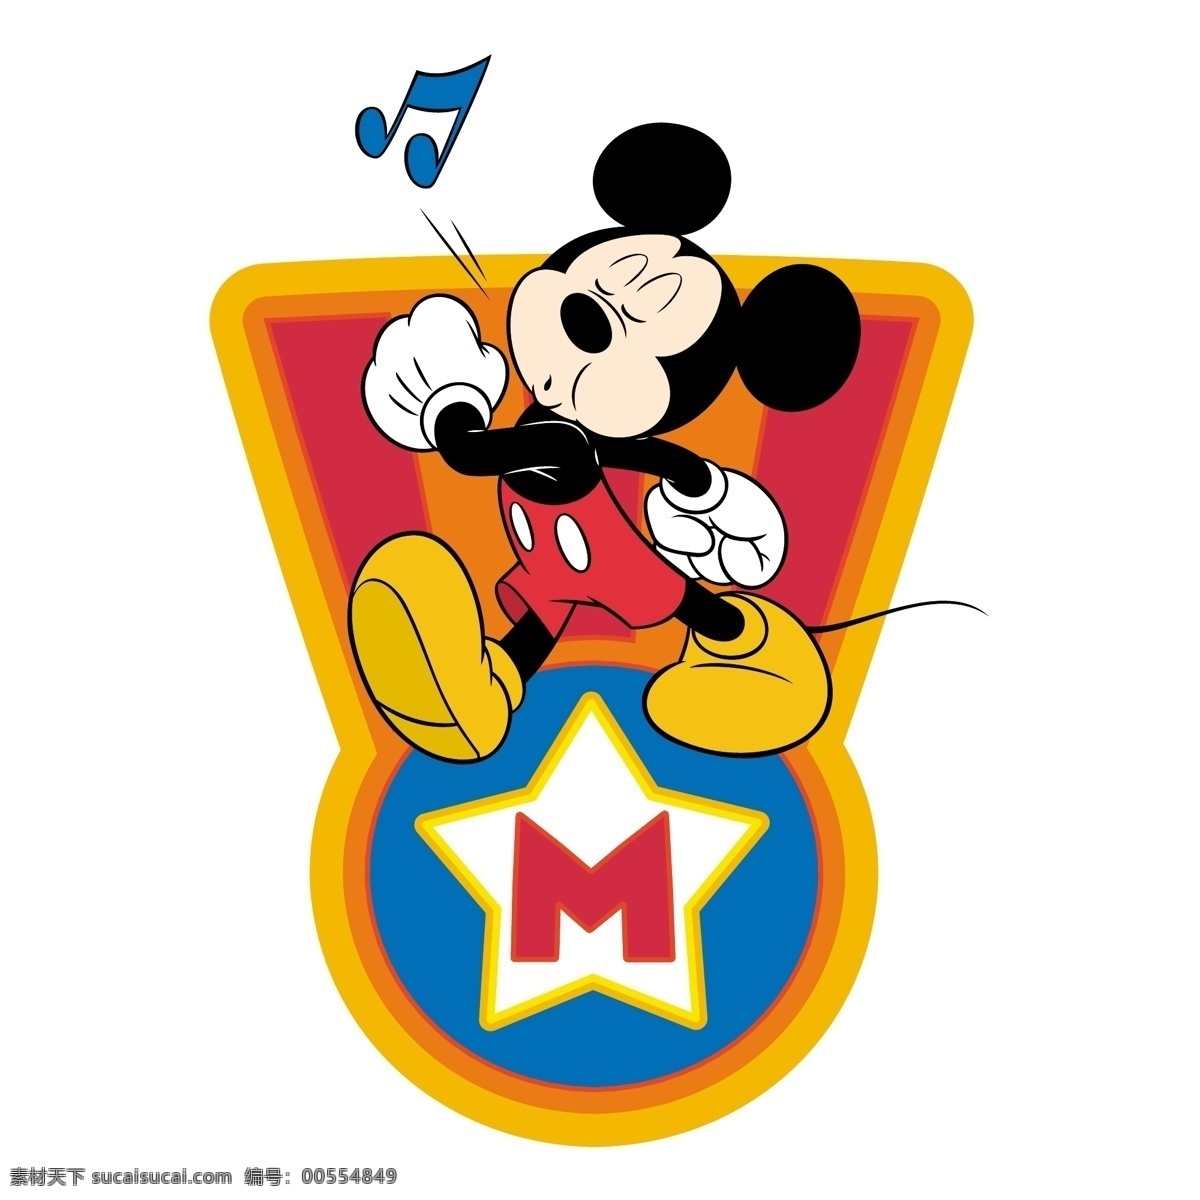 米奇 老鼠 免费 标志 标识 psd源文件 logo设计